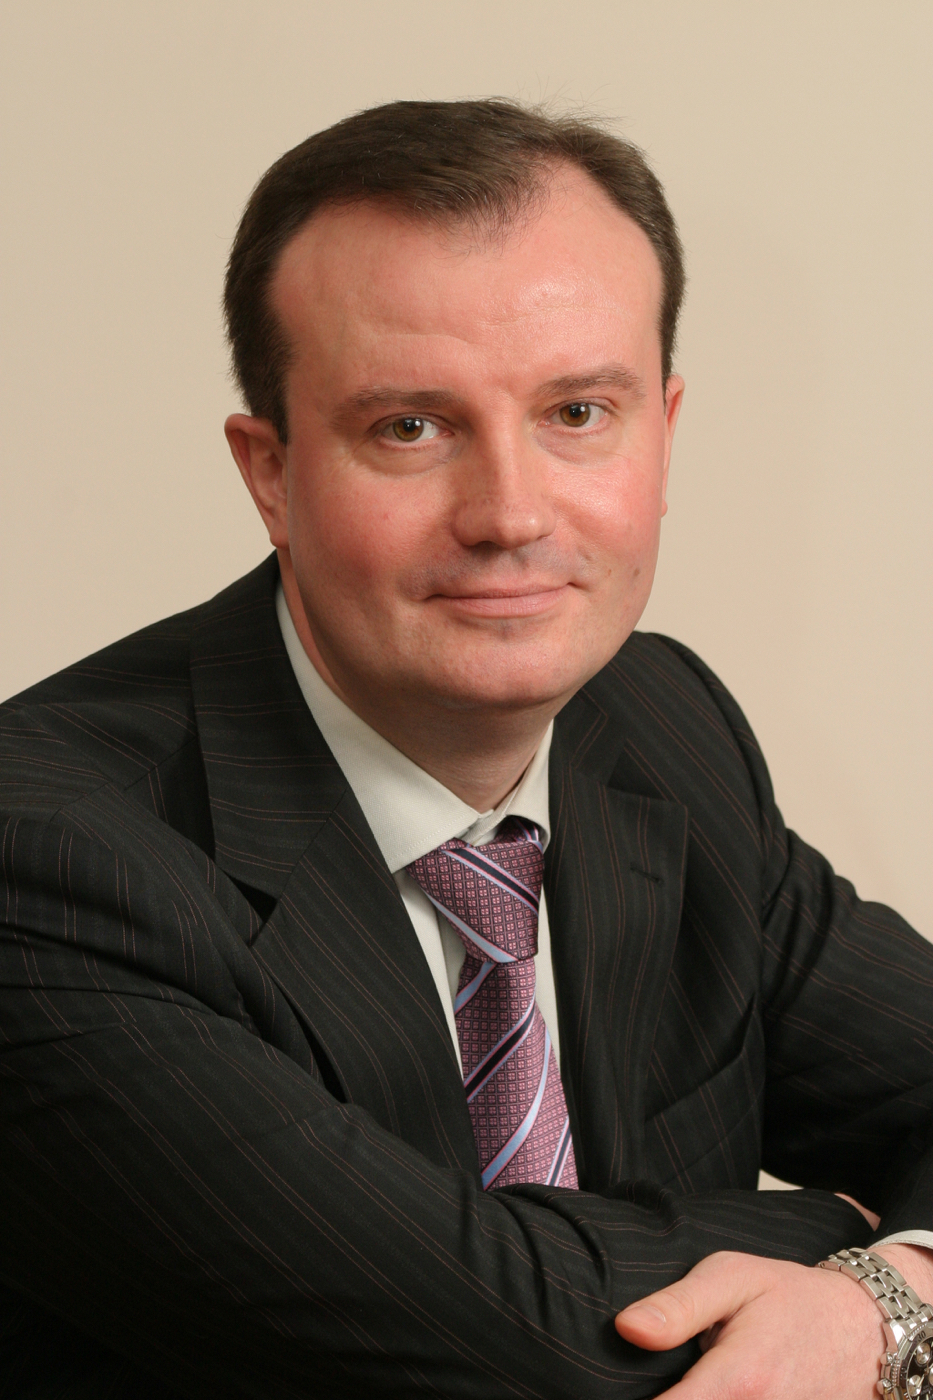 Васильев Владимир Александрович — Управляющий Санкт-Петербургским филиалом банка «Возрождение»